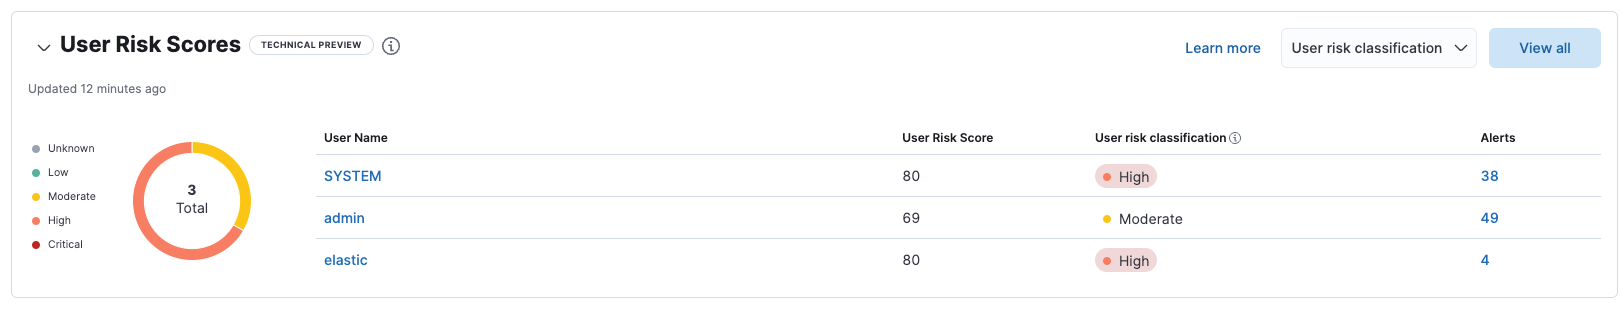 User risk table